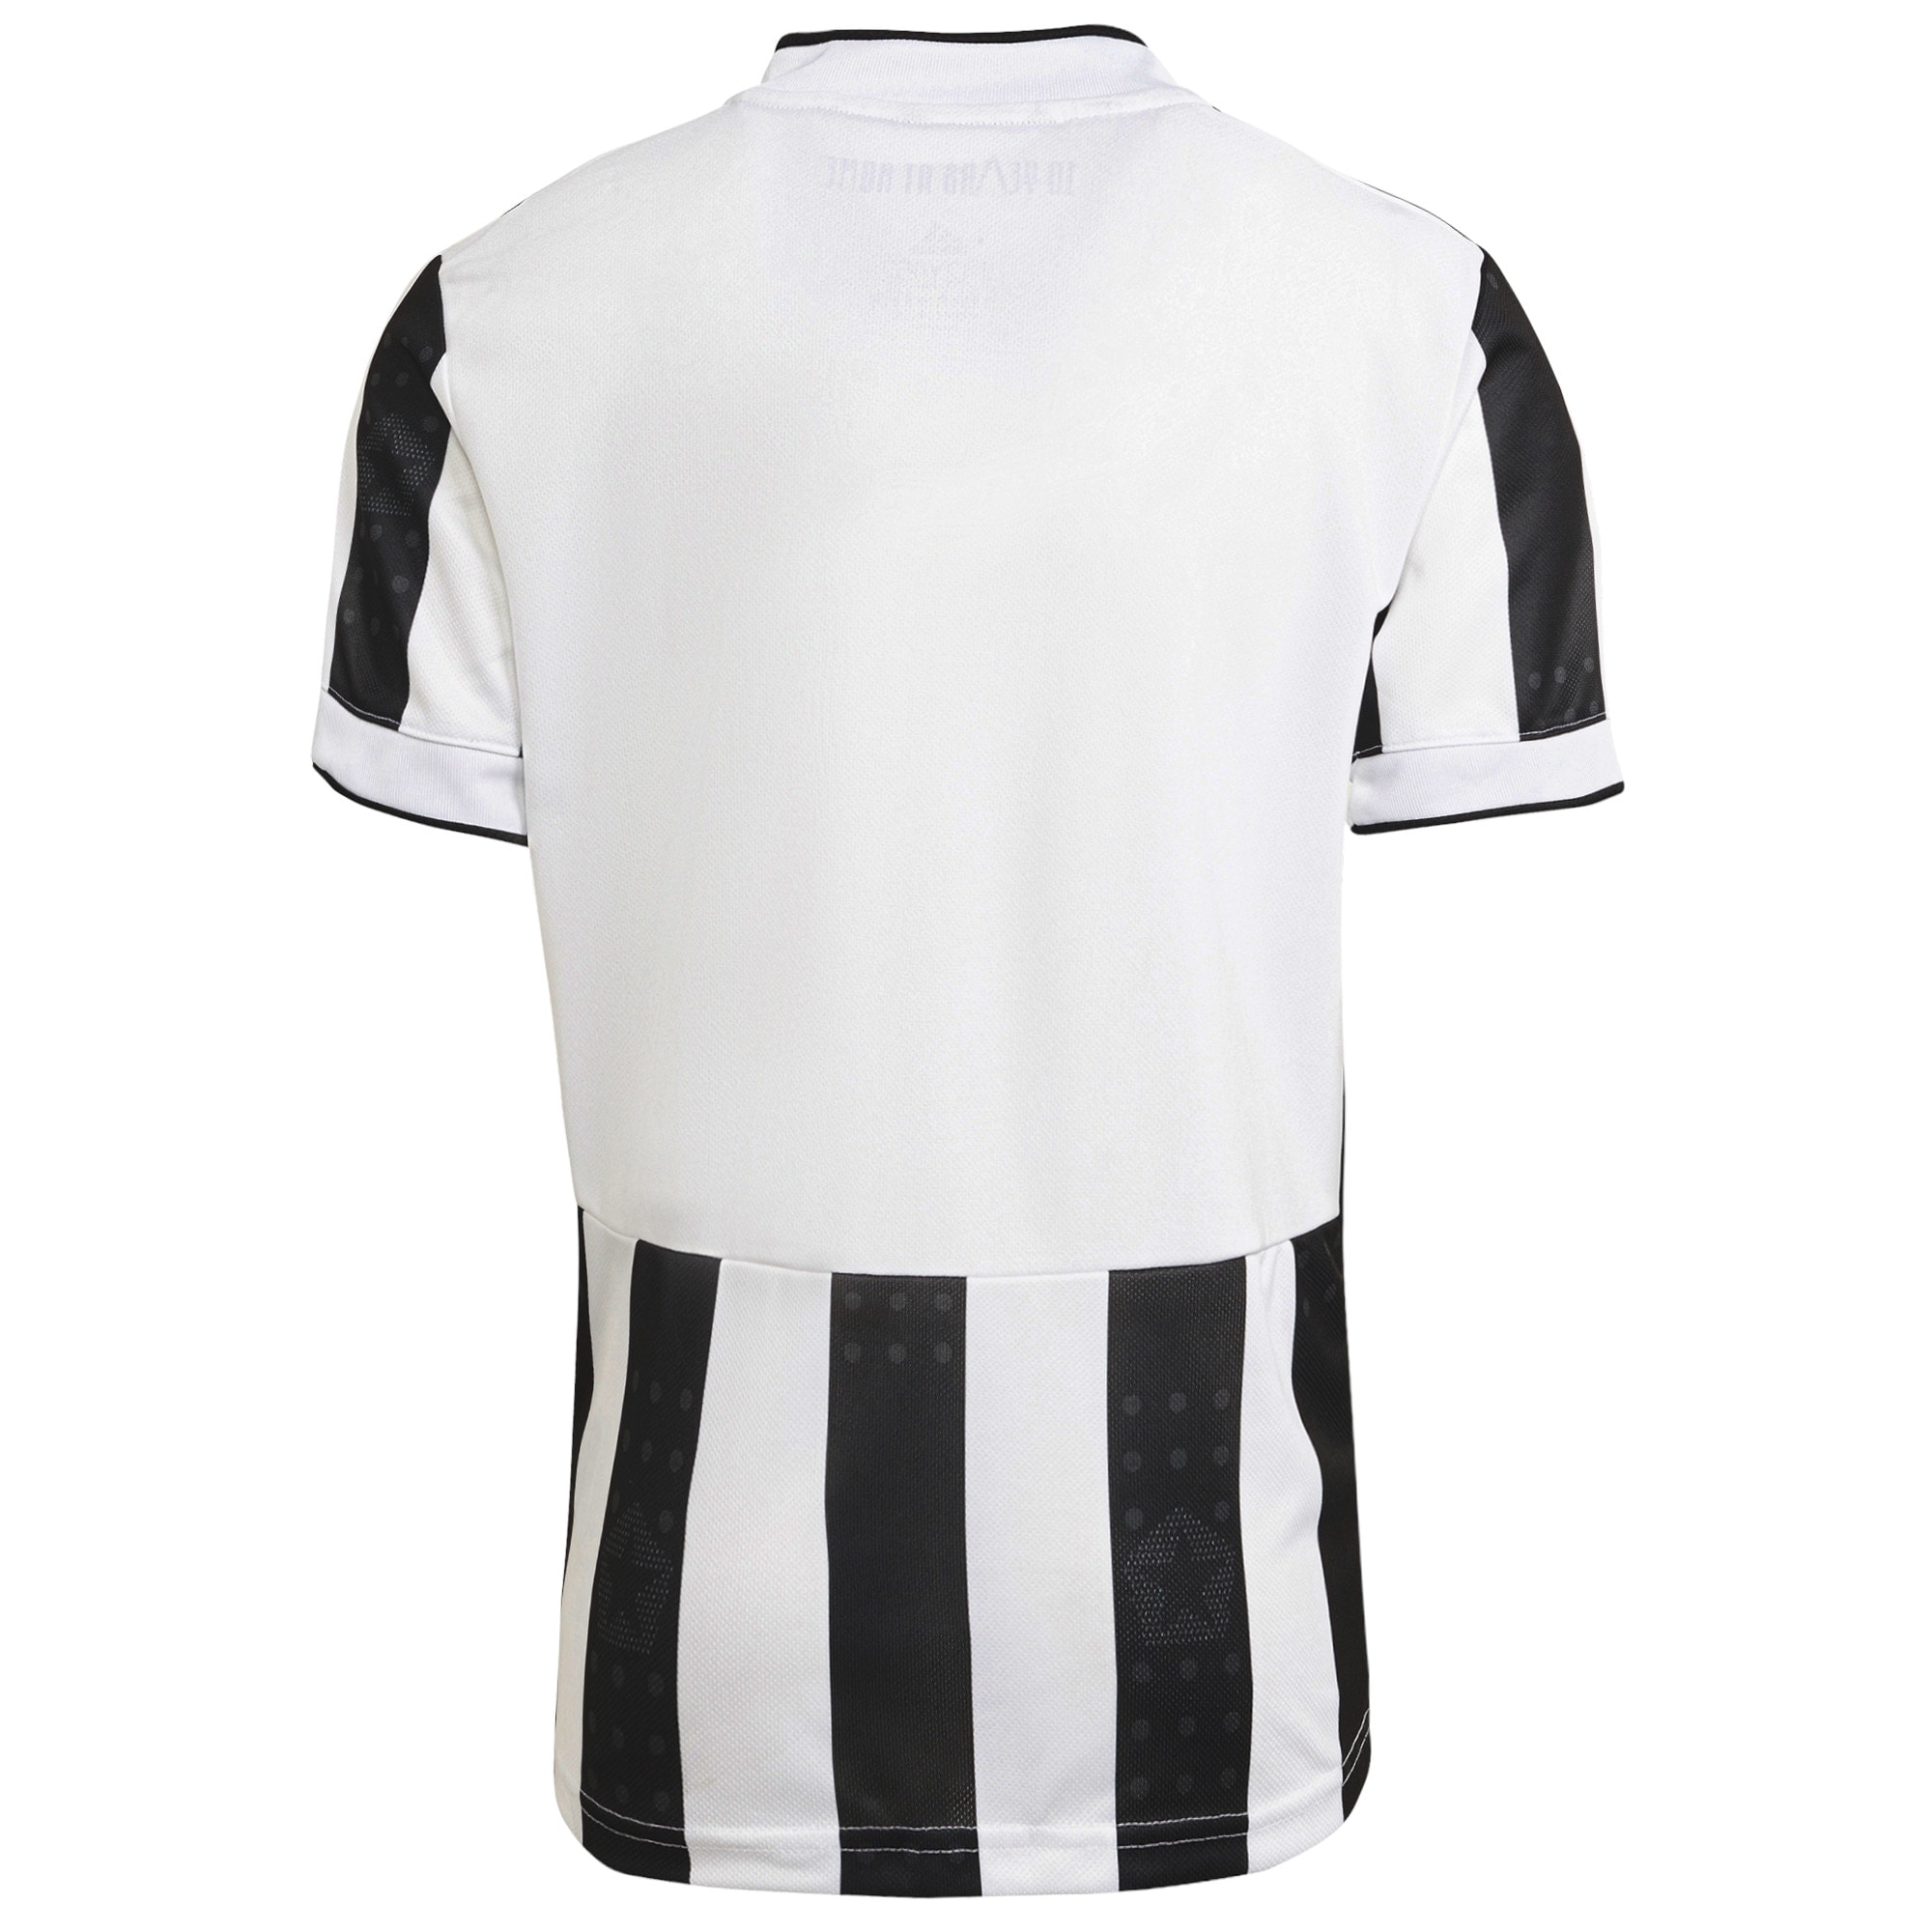 Juventus Home Shirt 2021-22